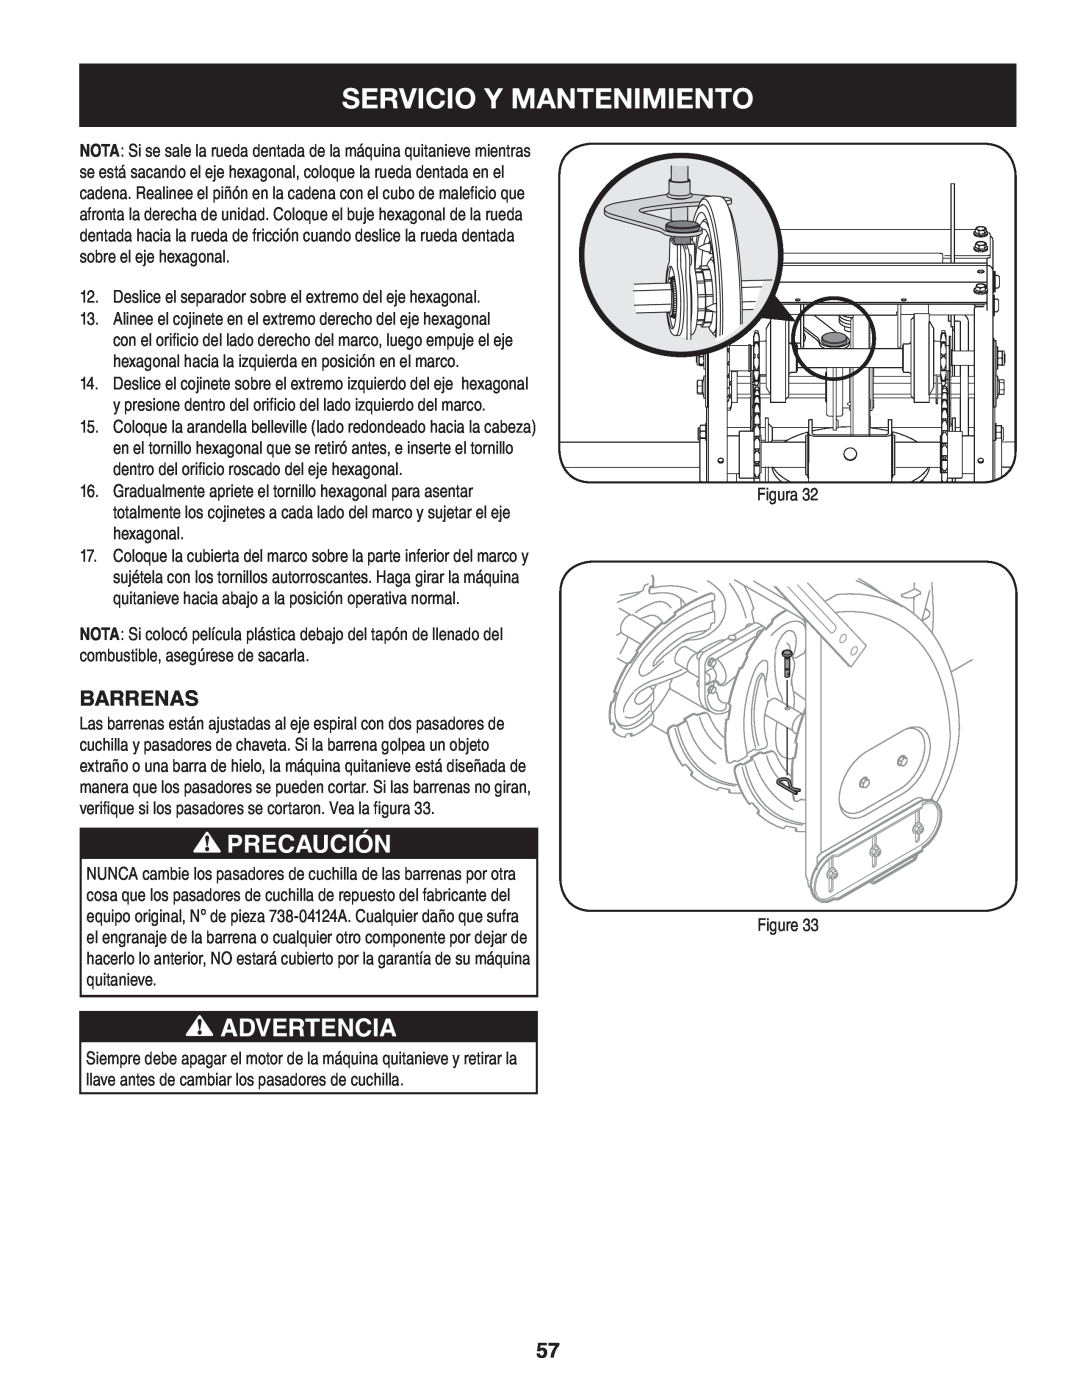 Craftsman 247.88045 manual Servicio Y Mantenimiento, Precaución, Advertencia, Barrenas 